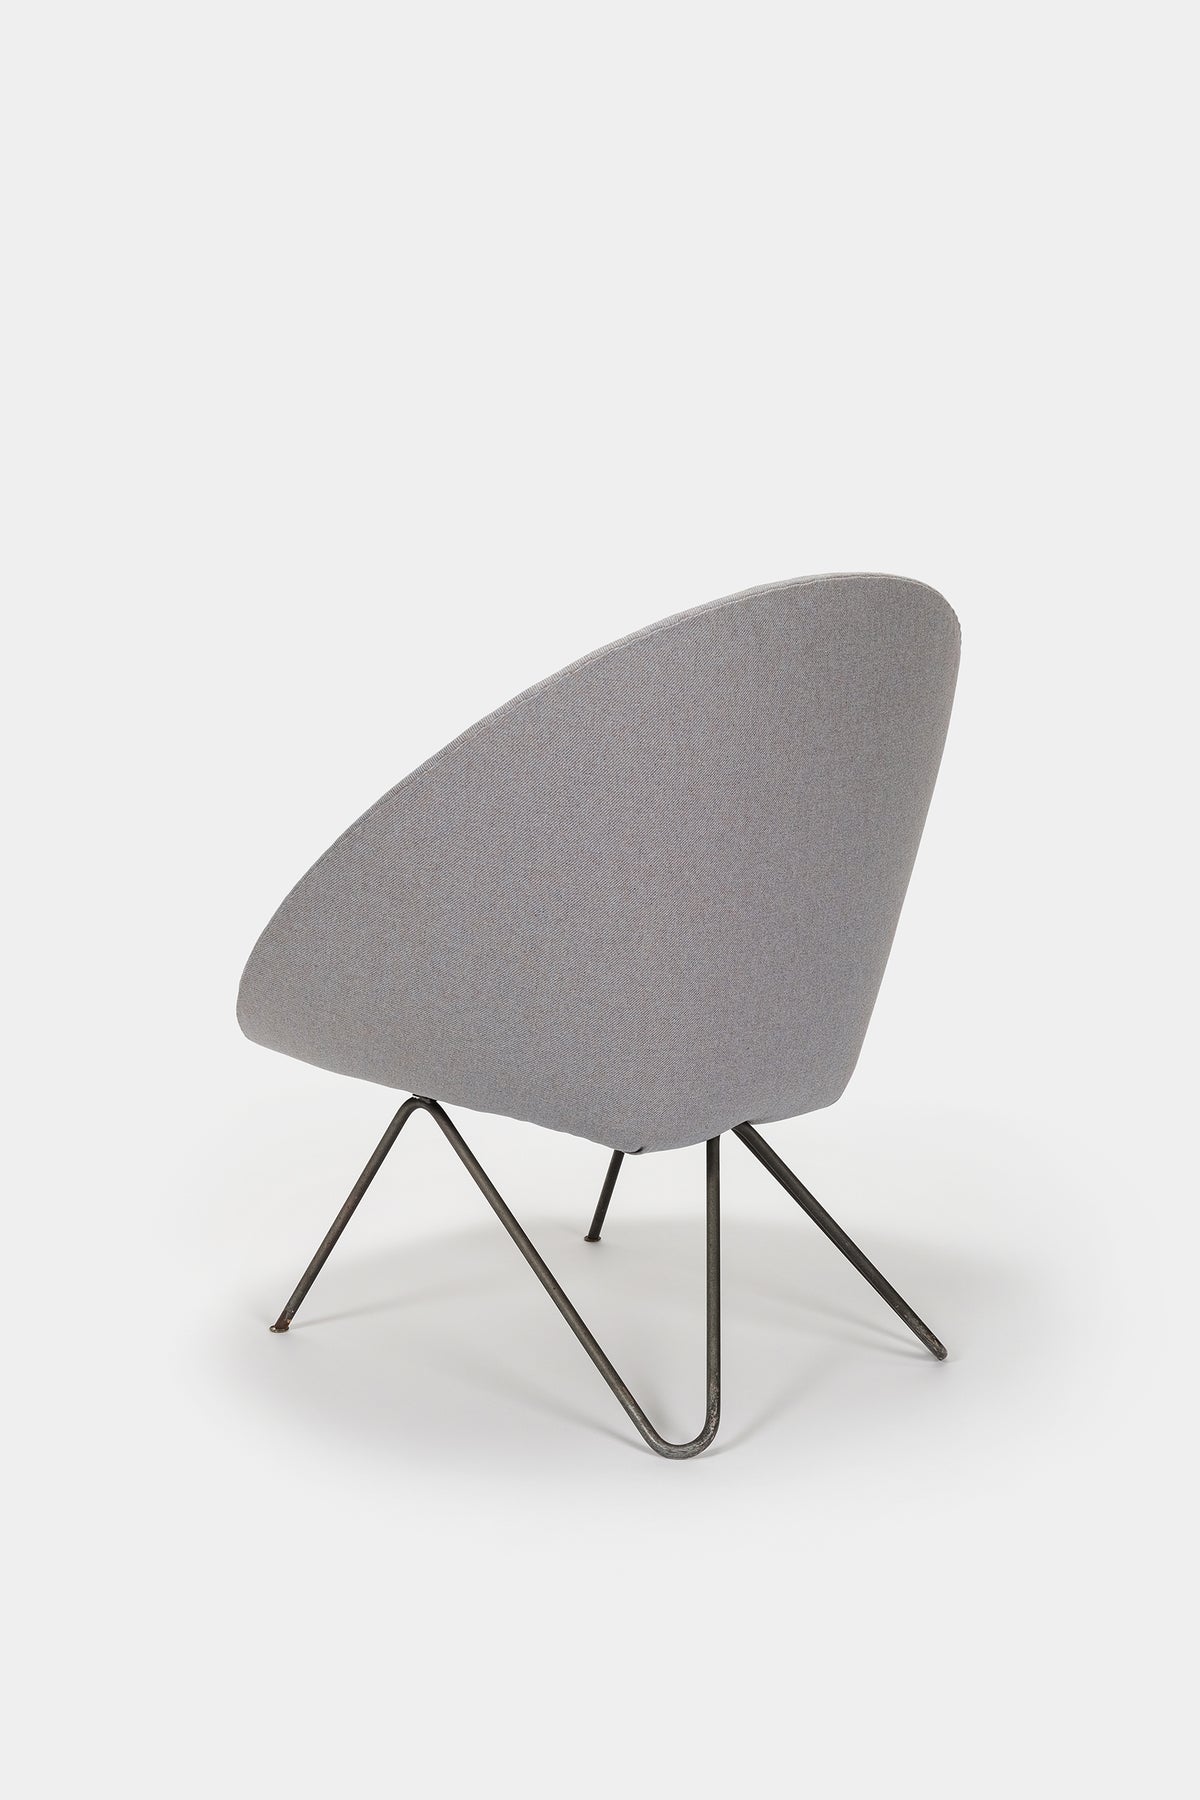 Circle Chair Armchair, 50s